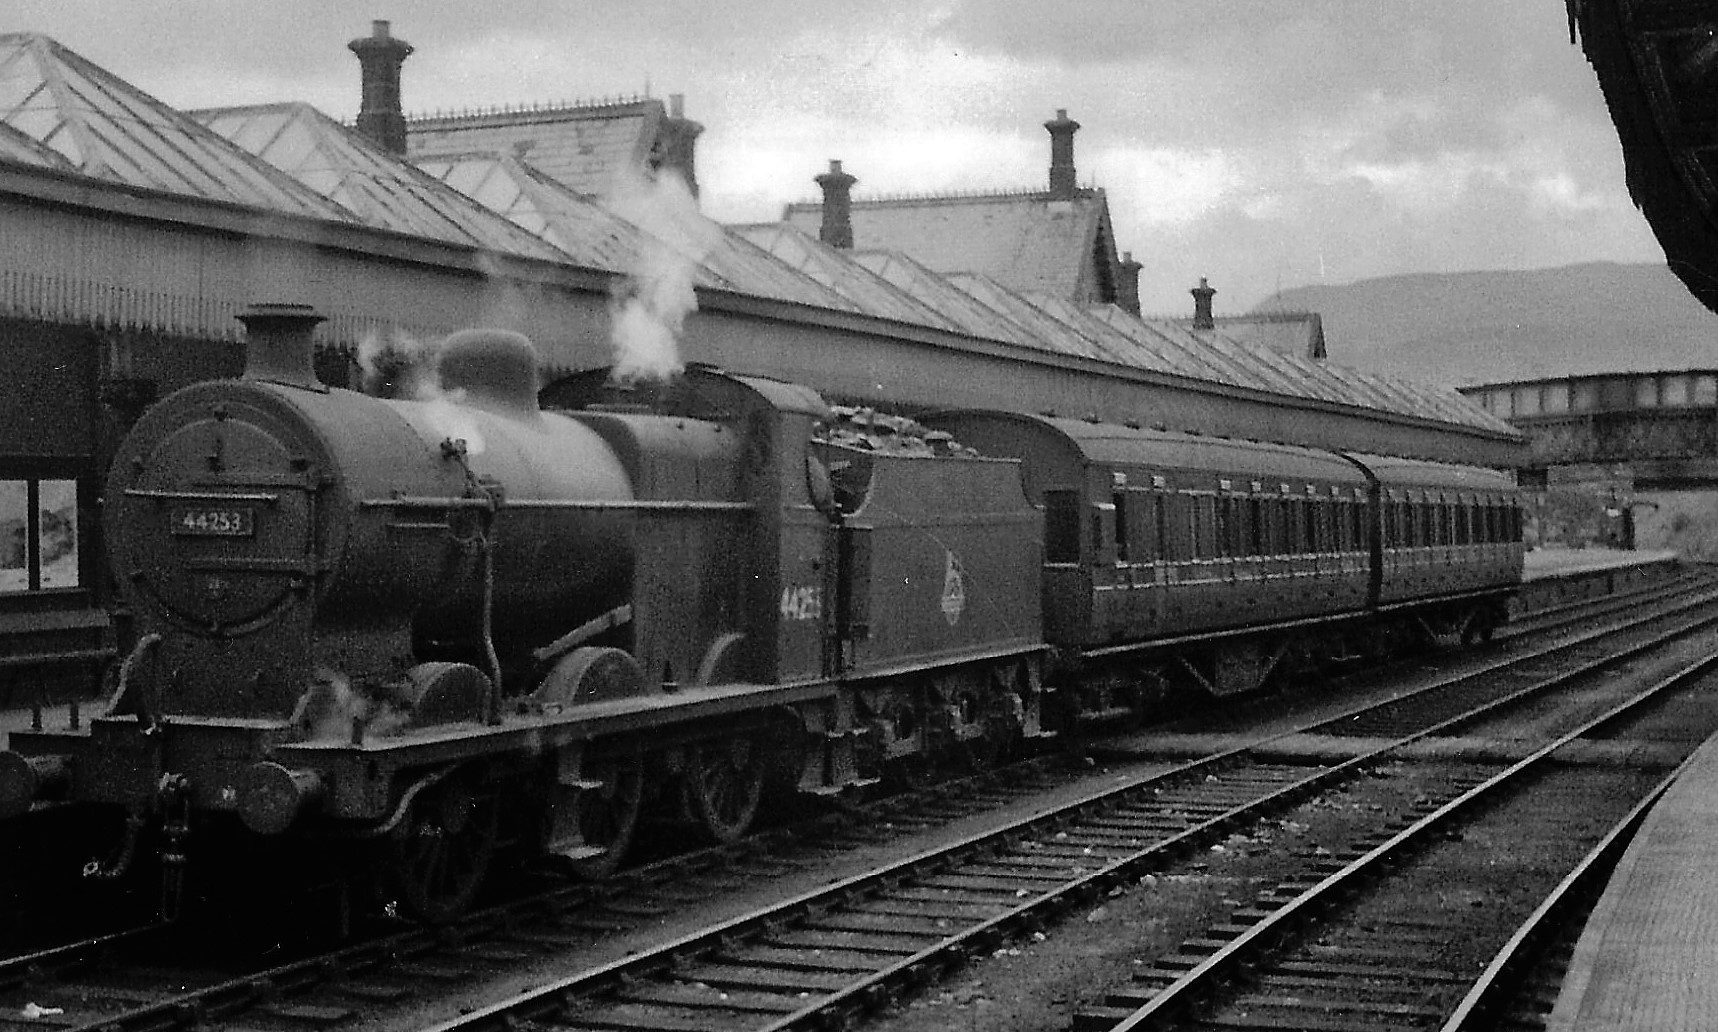 Crieff station, around 1960